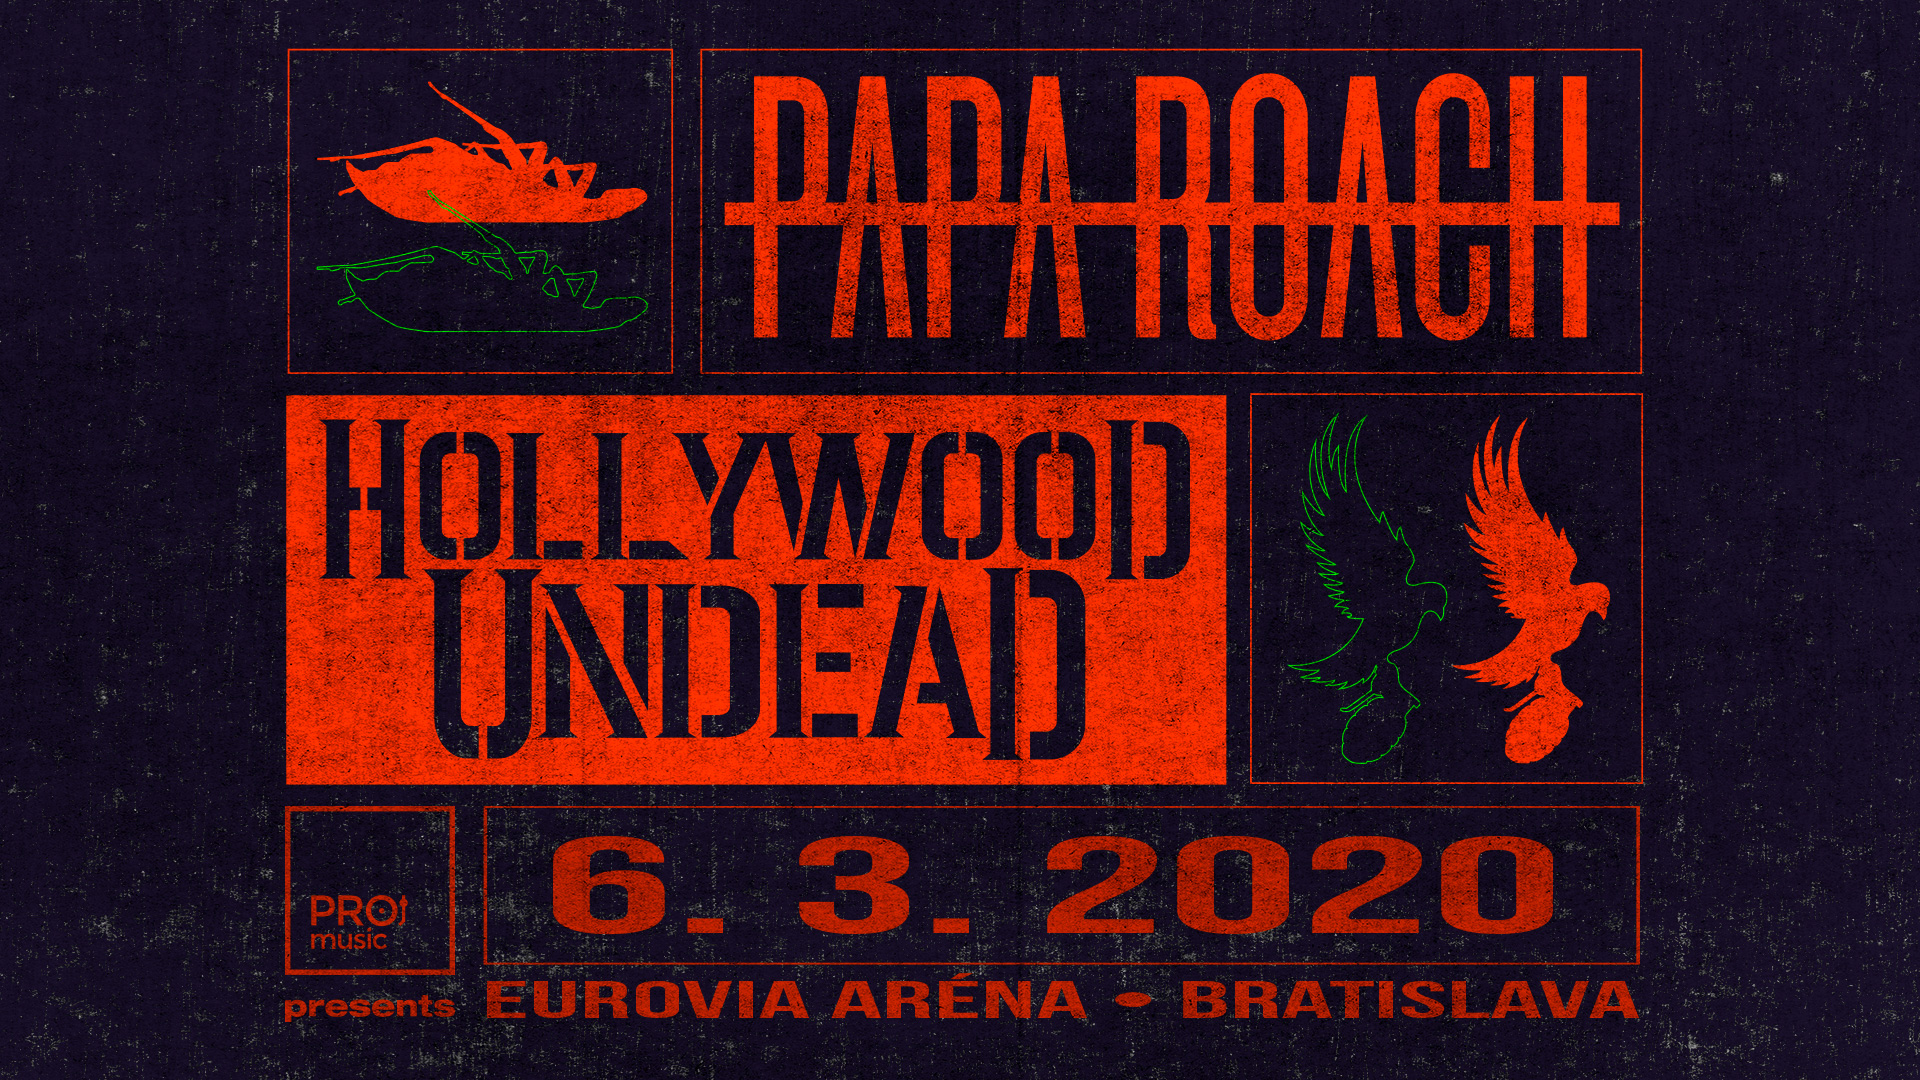 Papa Roach + Hollywood Undead